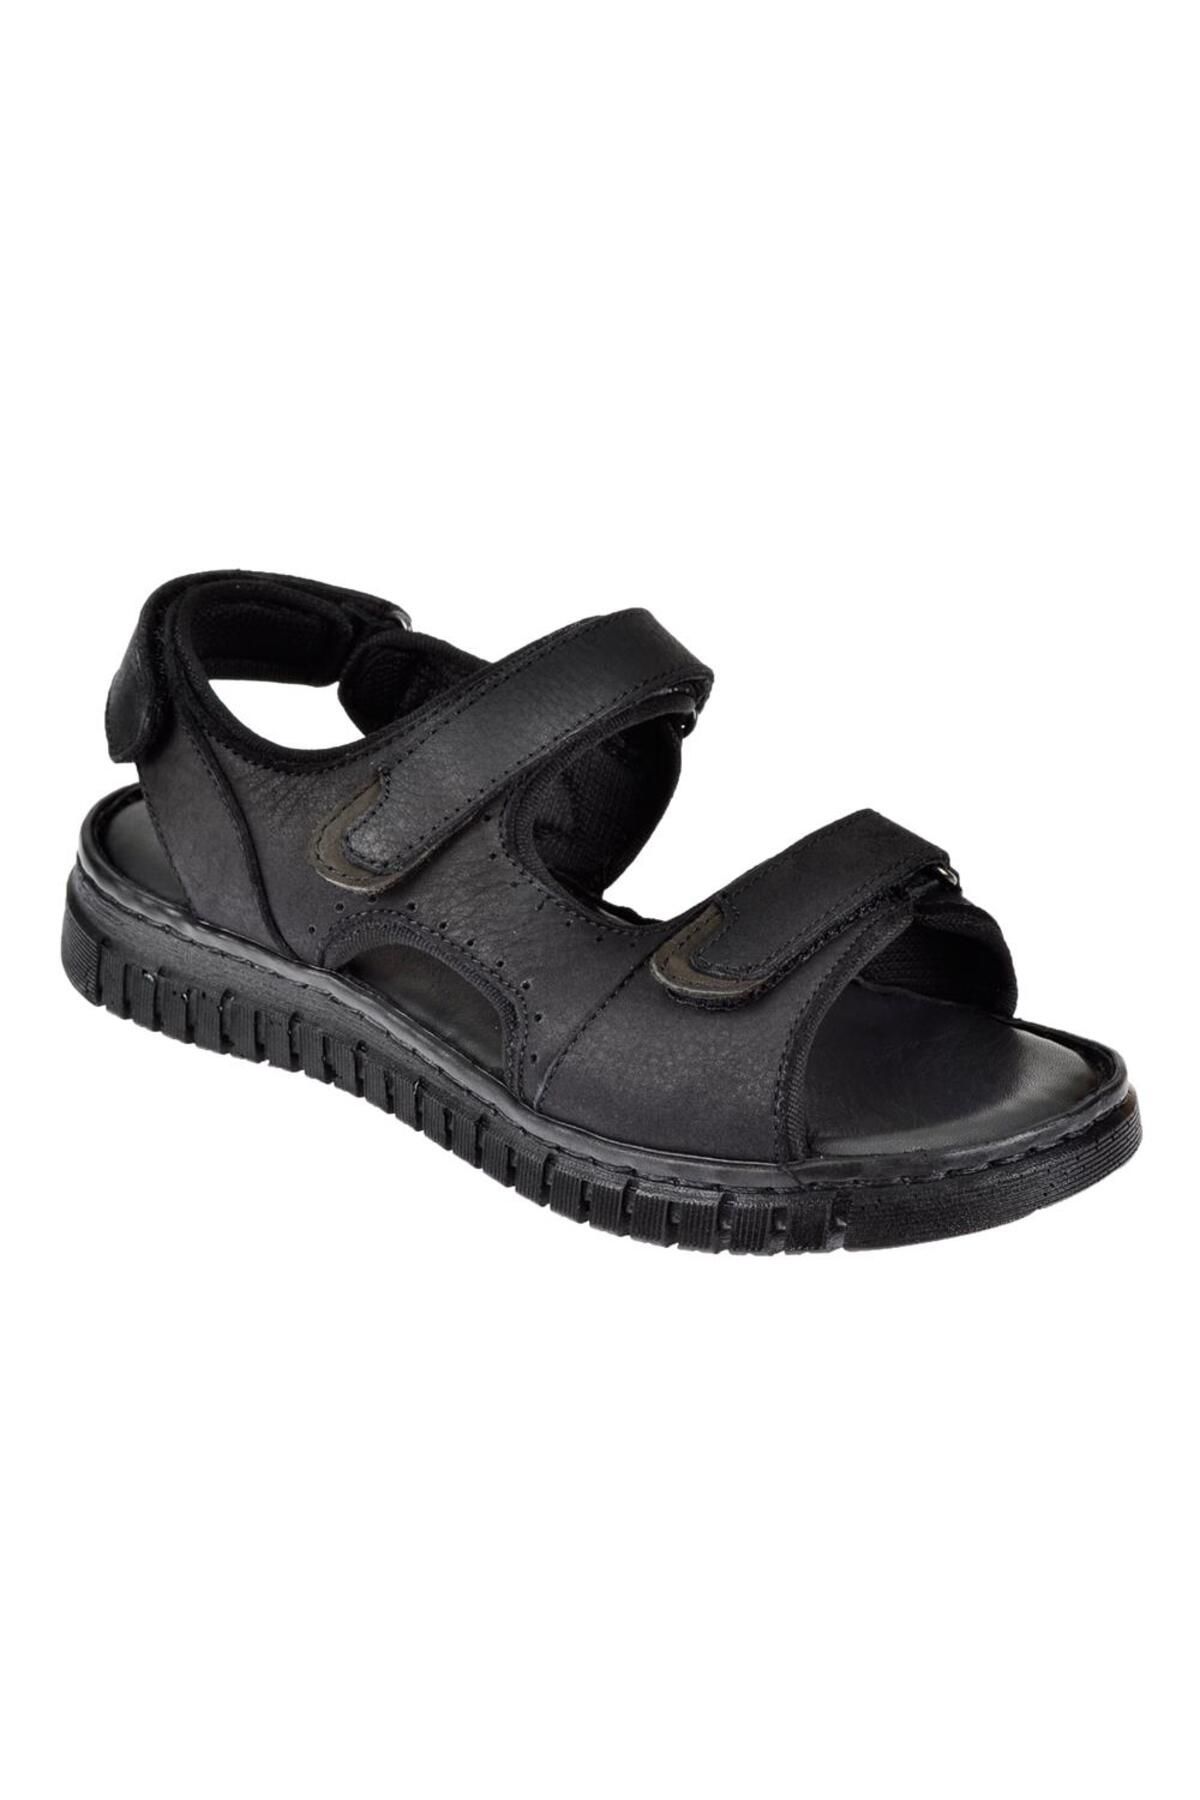 Forelli Hakiki Deri Comfort Cırtlı Kadın Sandalet For-38506 Siyah Nubuk